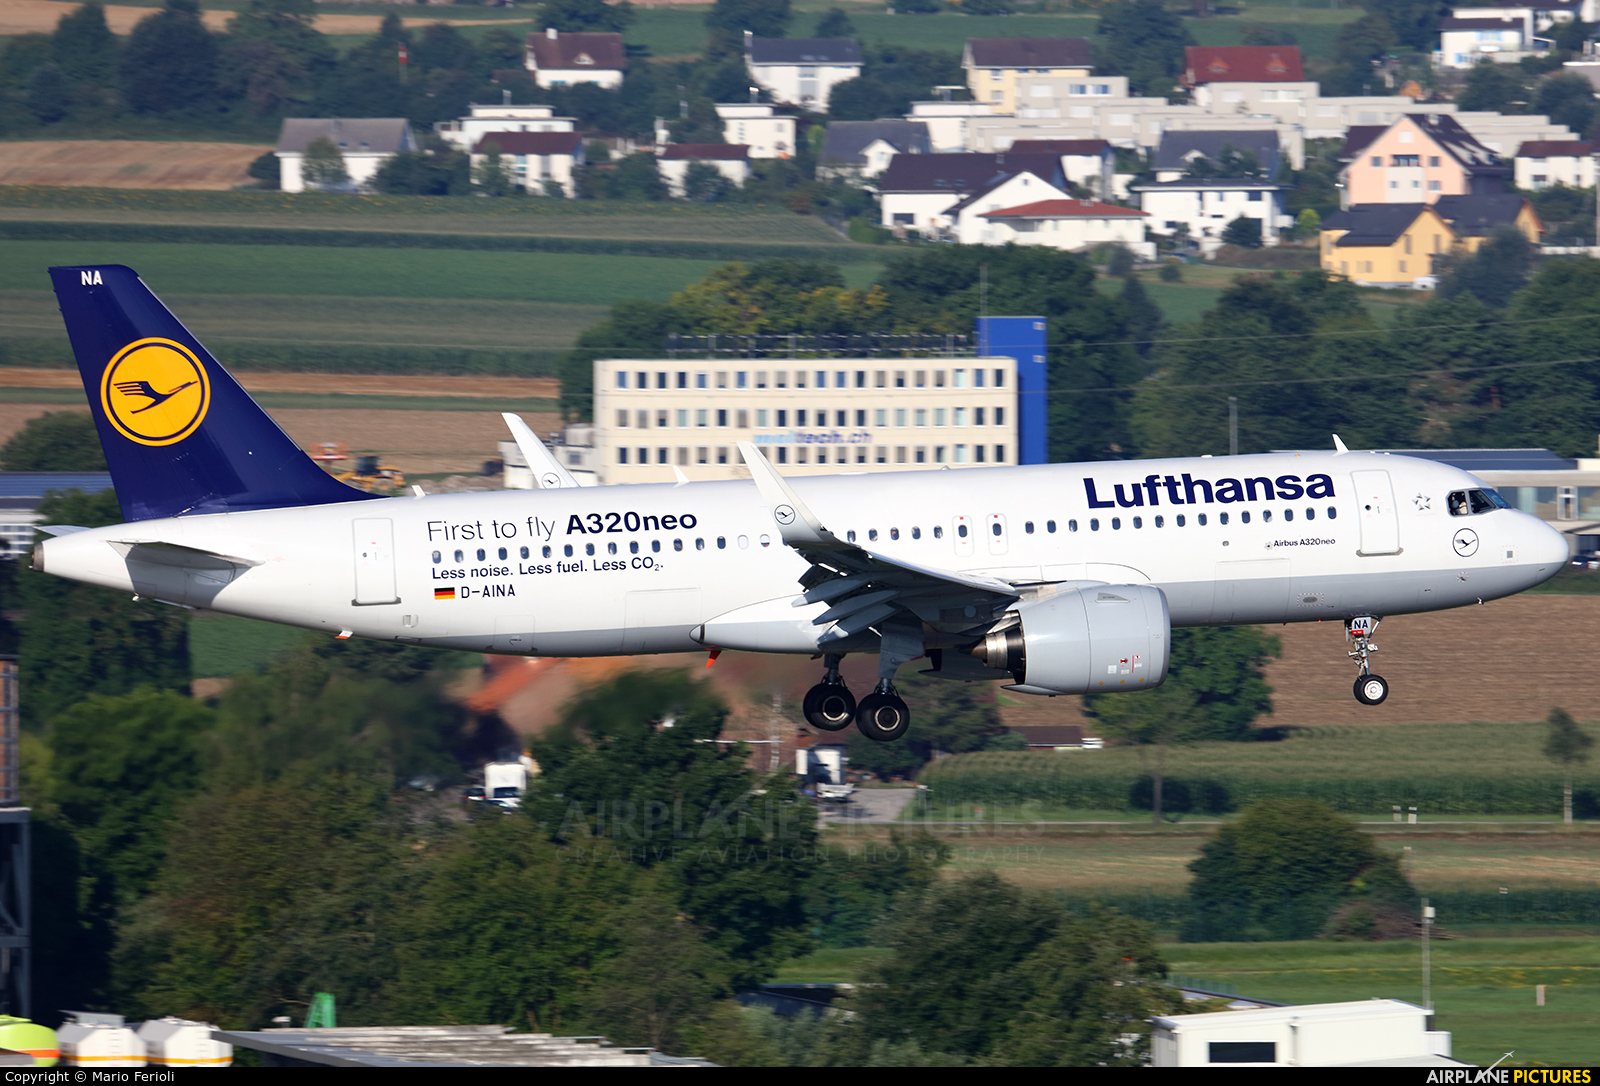 Lufthansa D-AINA aircraft at Zurich